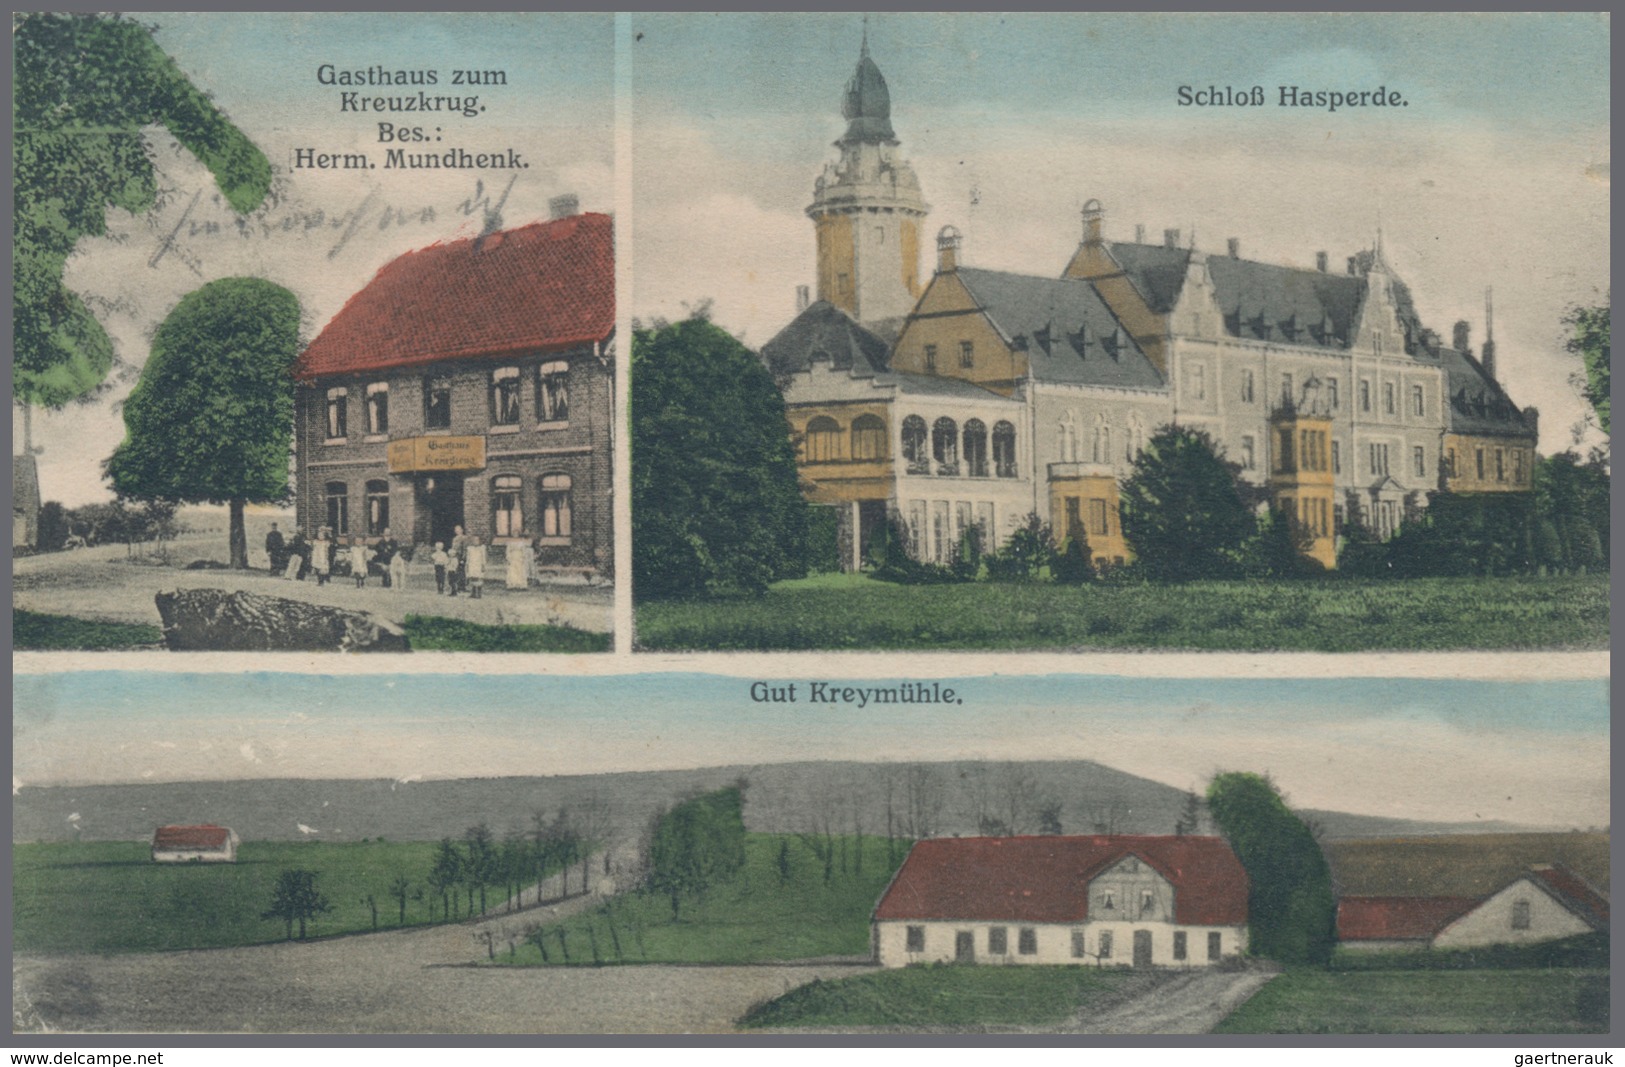 Ansichtskarten: Niedersachsen: Bad Münder und Umgebung, über 130 Karten ab 1898 bis in die 60er Jahr